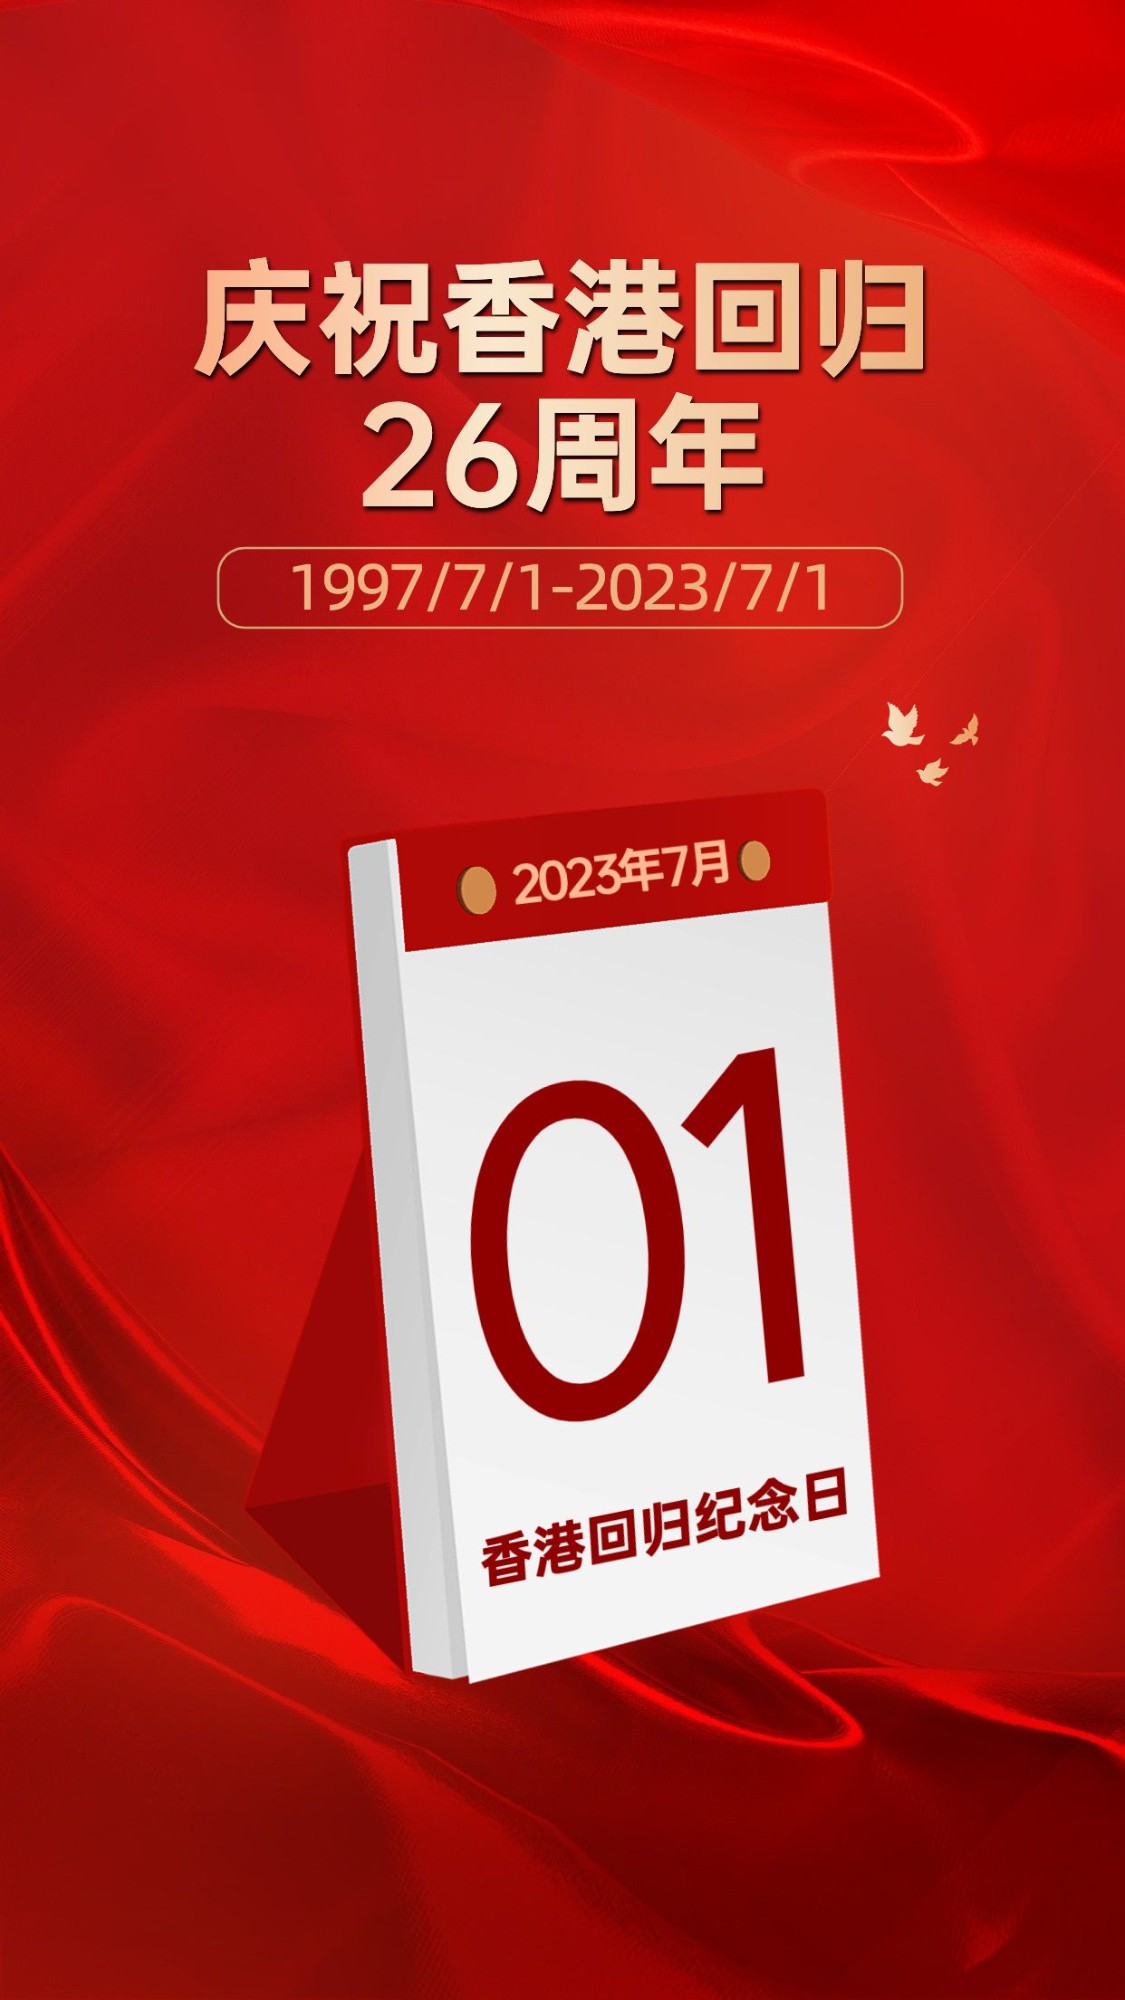 香港回归纪念日红金排版手机海报